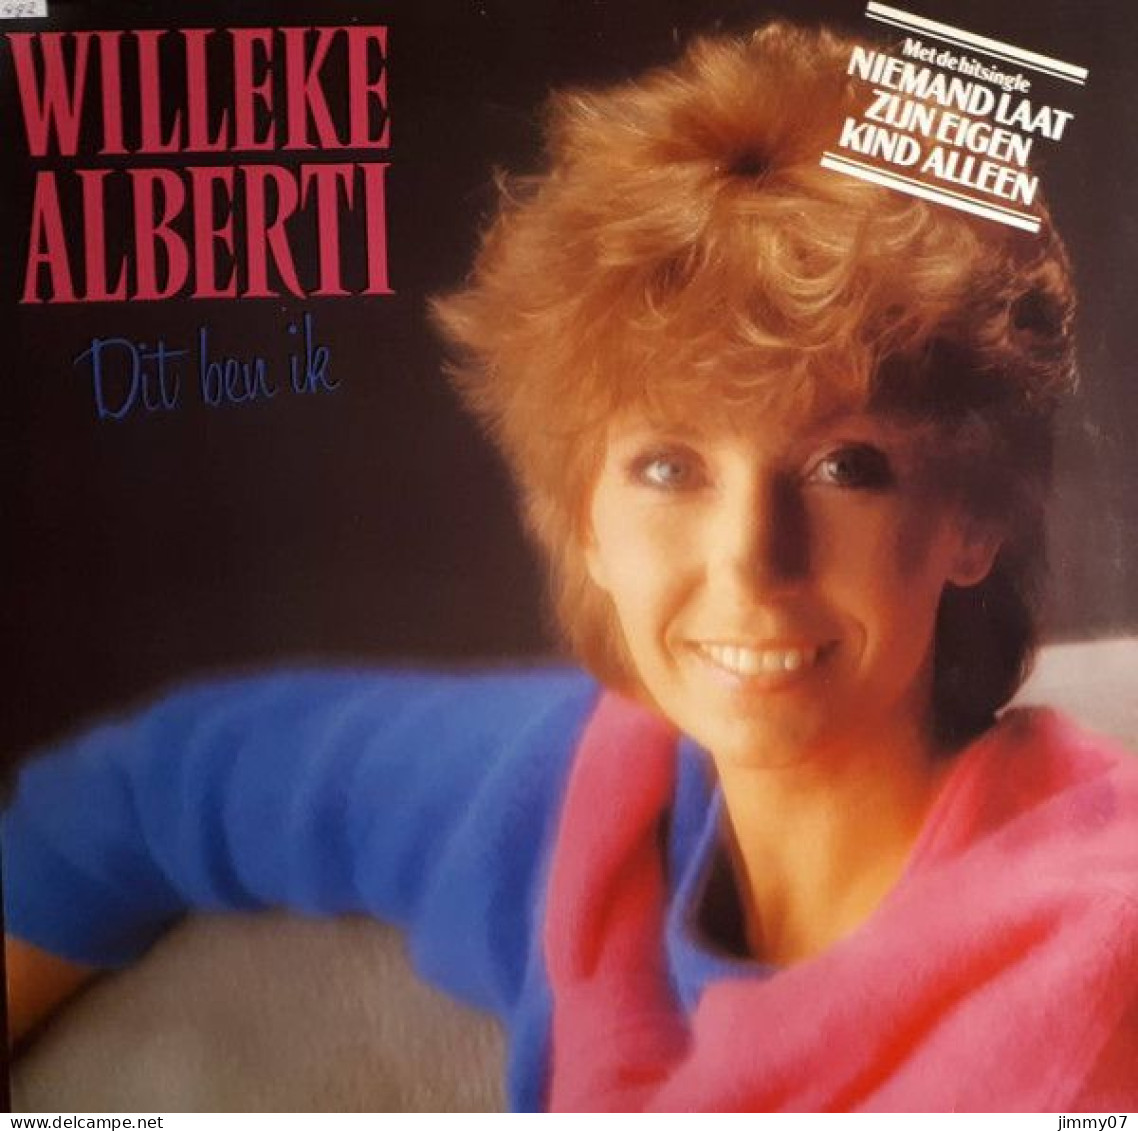 Willeke Alberti - Dit Ben Ik (LP, Album, RE) - Disco, Pop